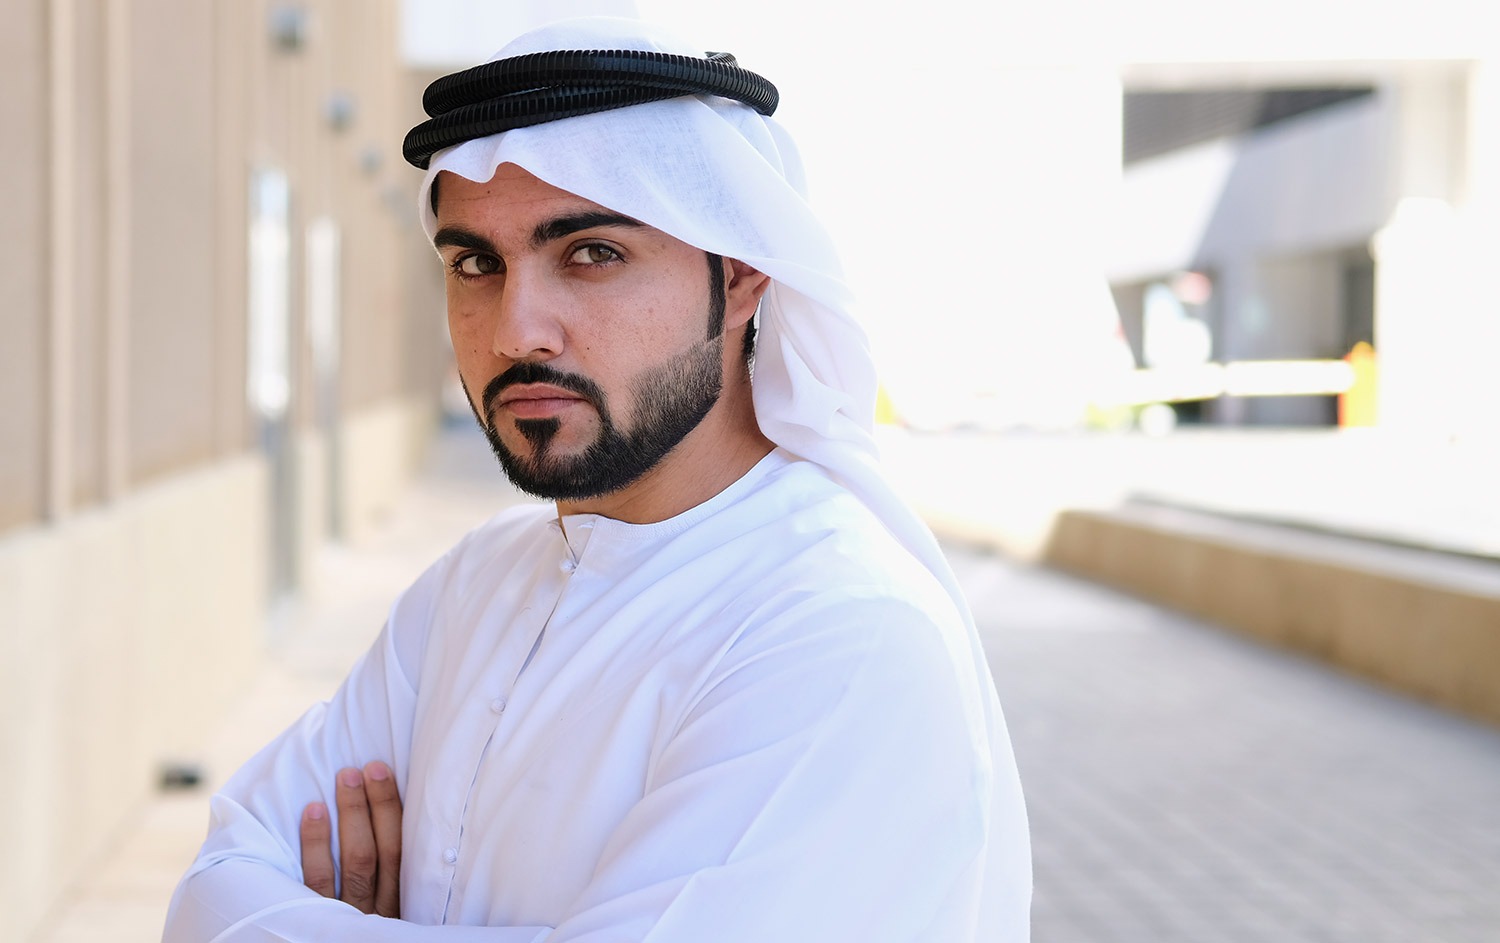 Traditional Emirati dress for men